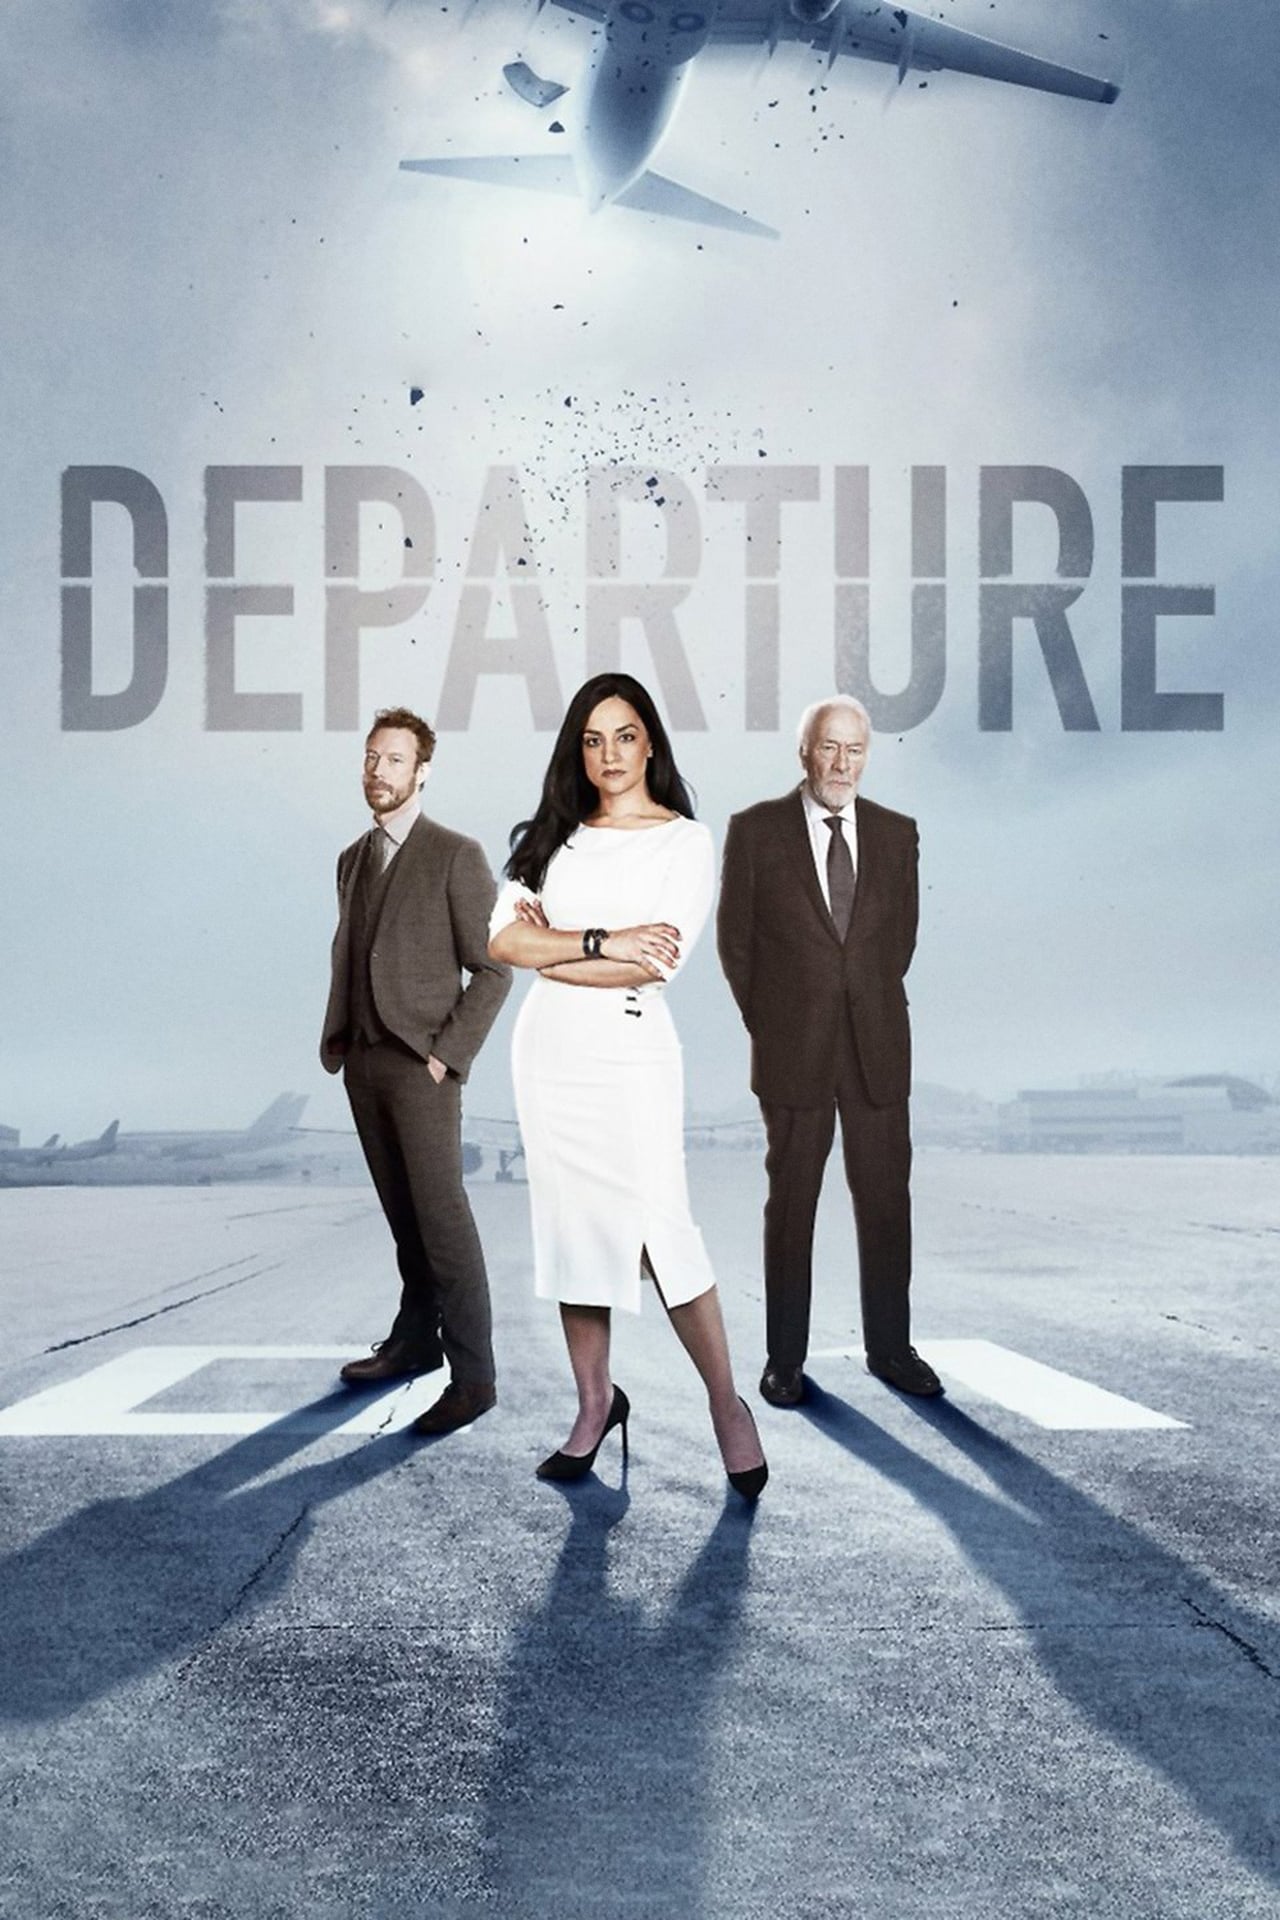 Departure (season 2)